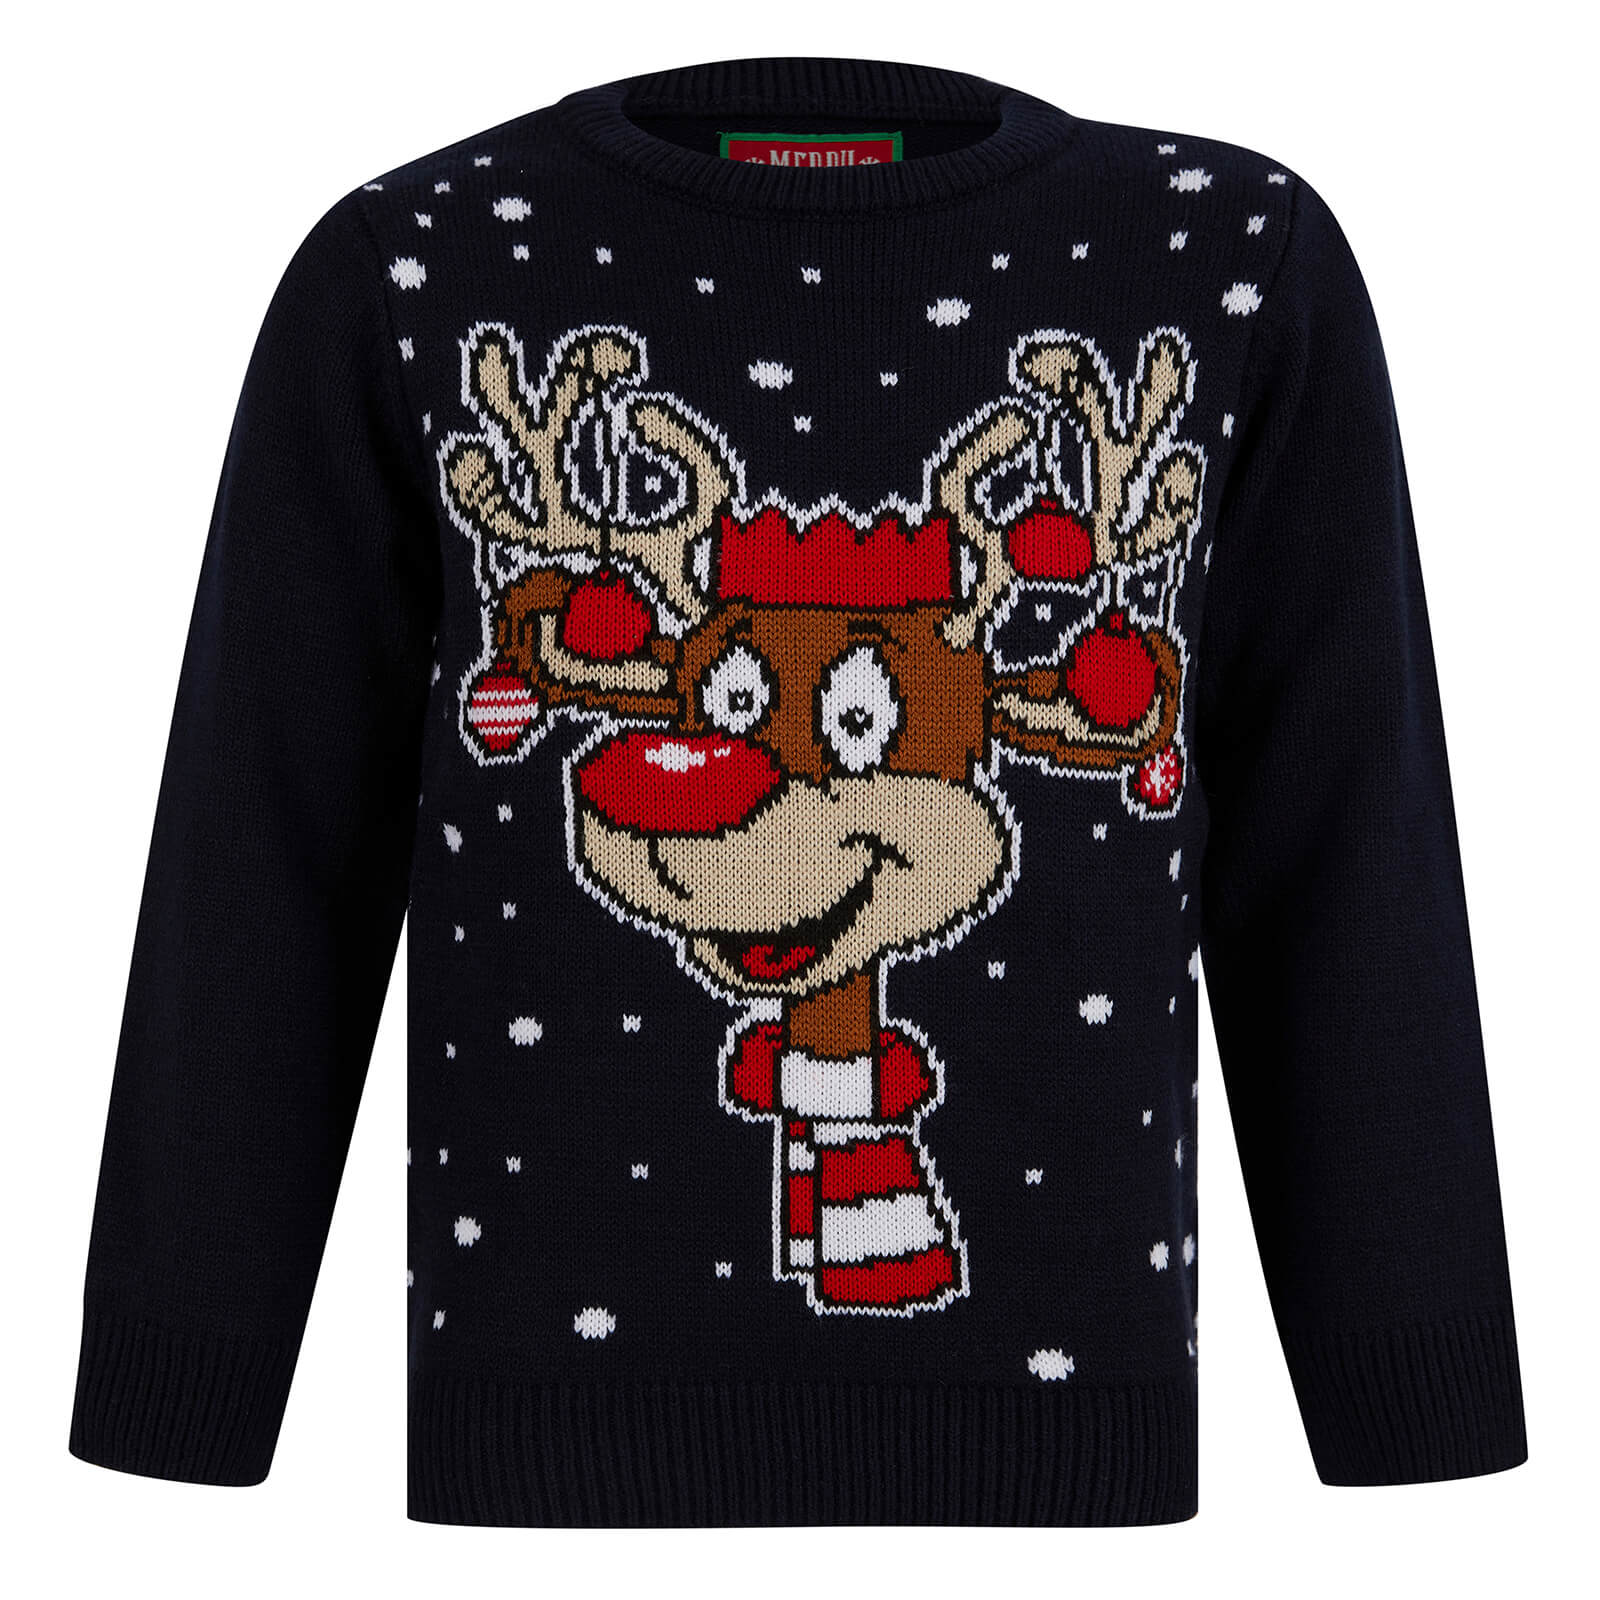 Mr Crimbo Kids LED Reindeer Christmas Jumper Light Up Baubles - MrCrimbo.co.uk -SRG2A17410_A - Ink -11-13 years